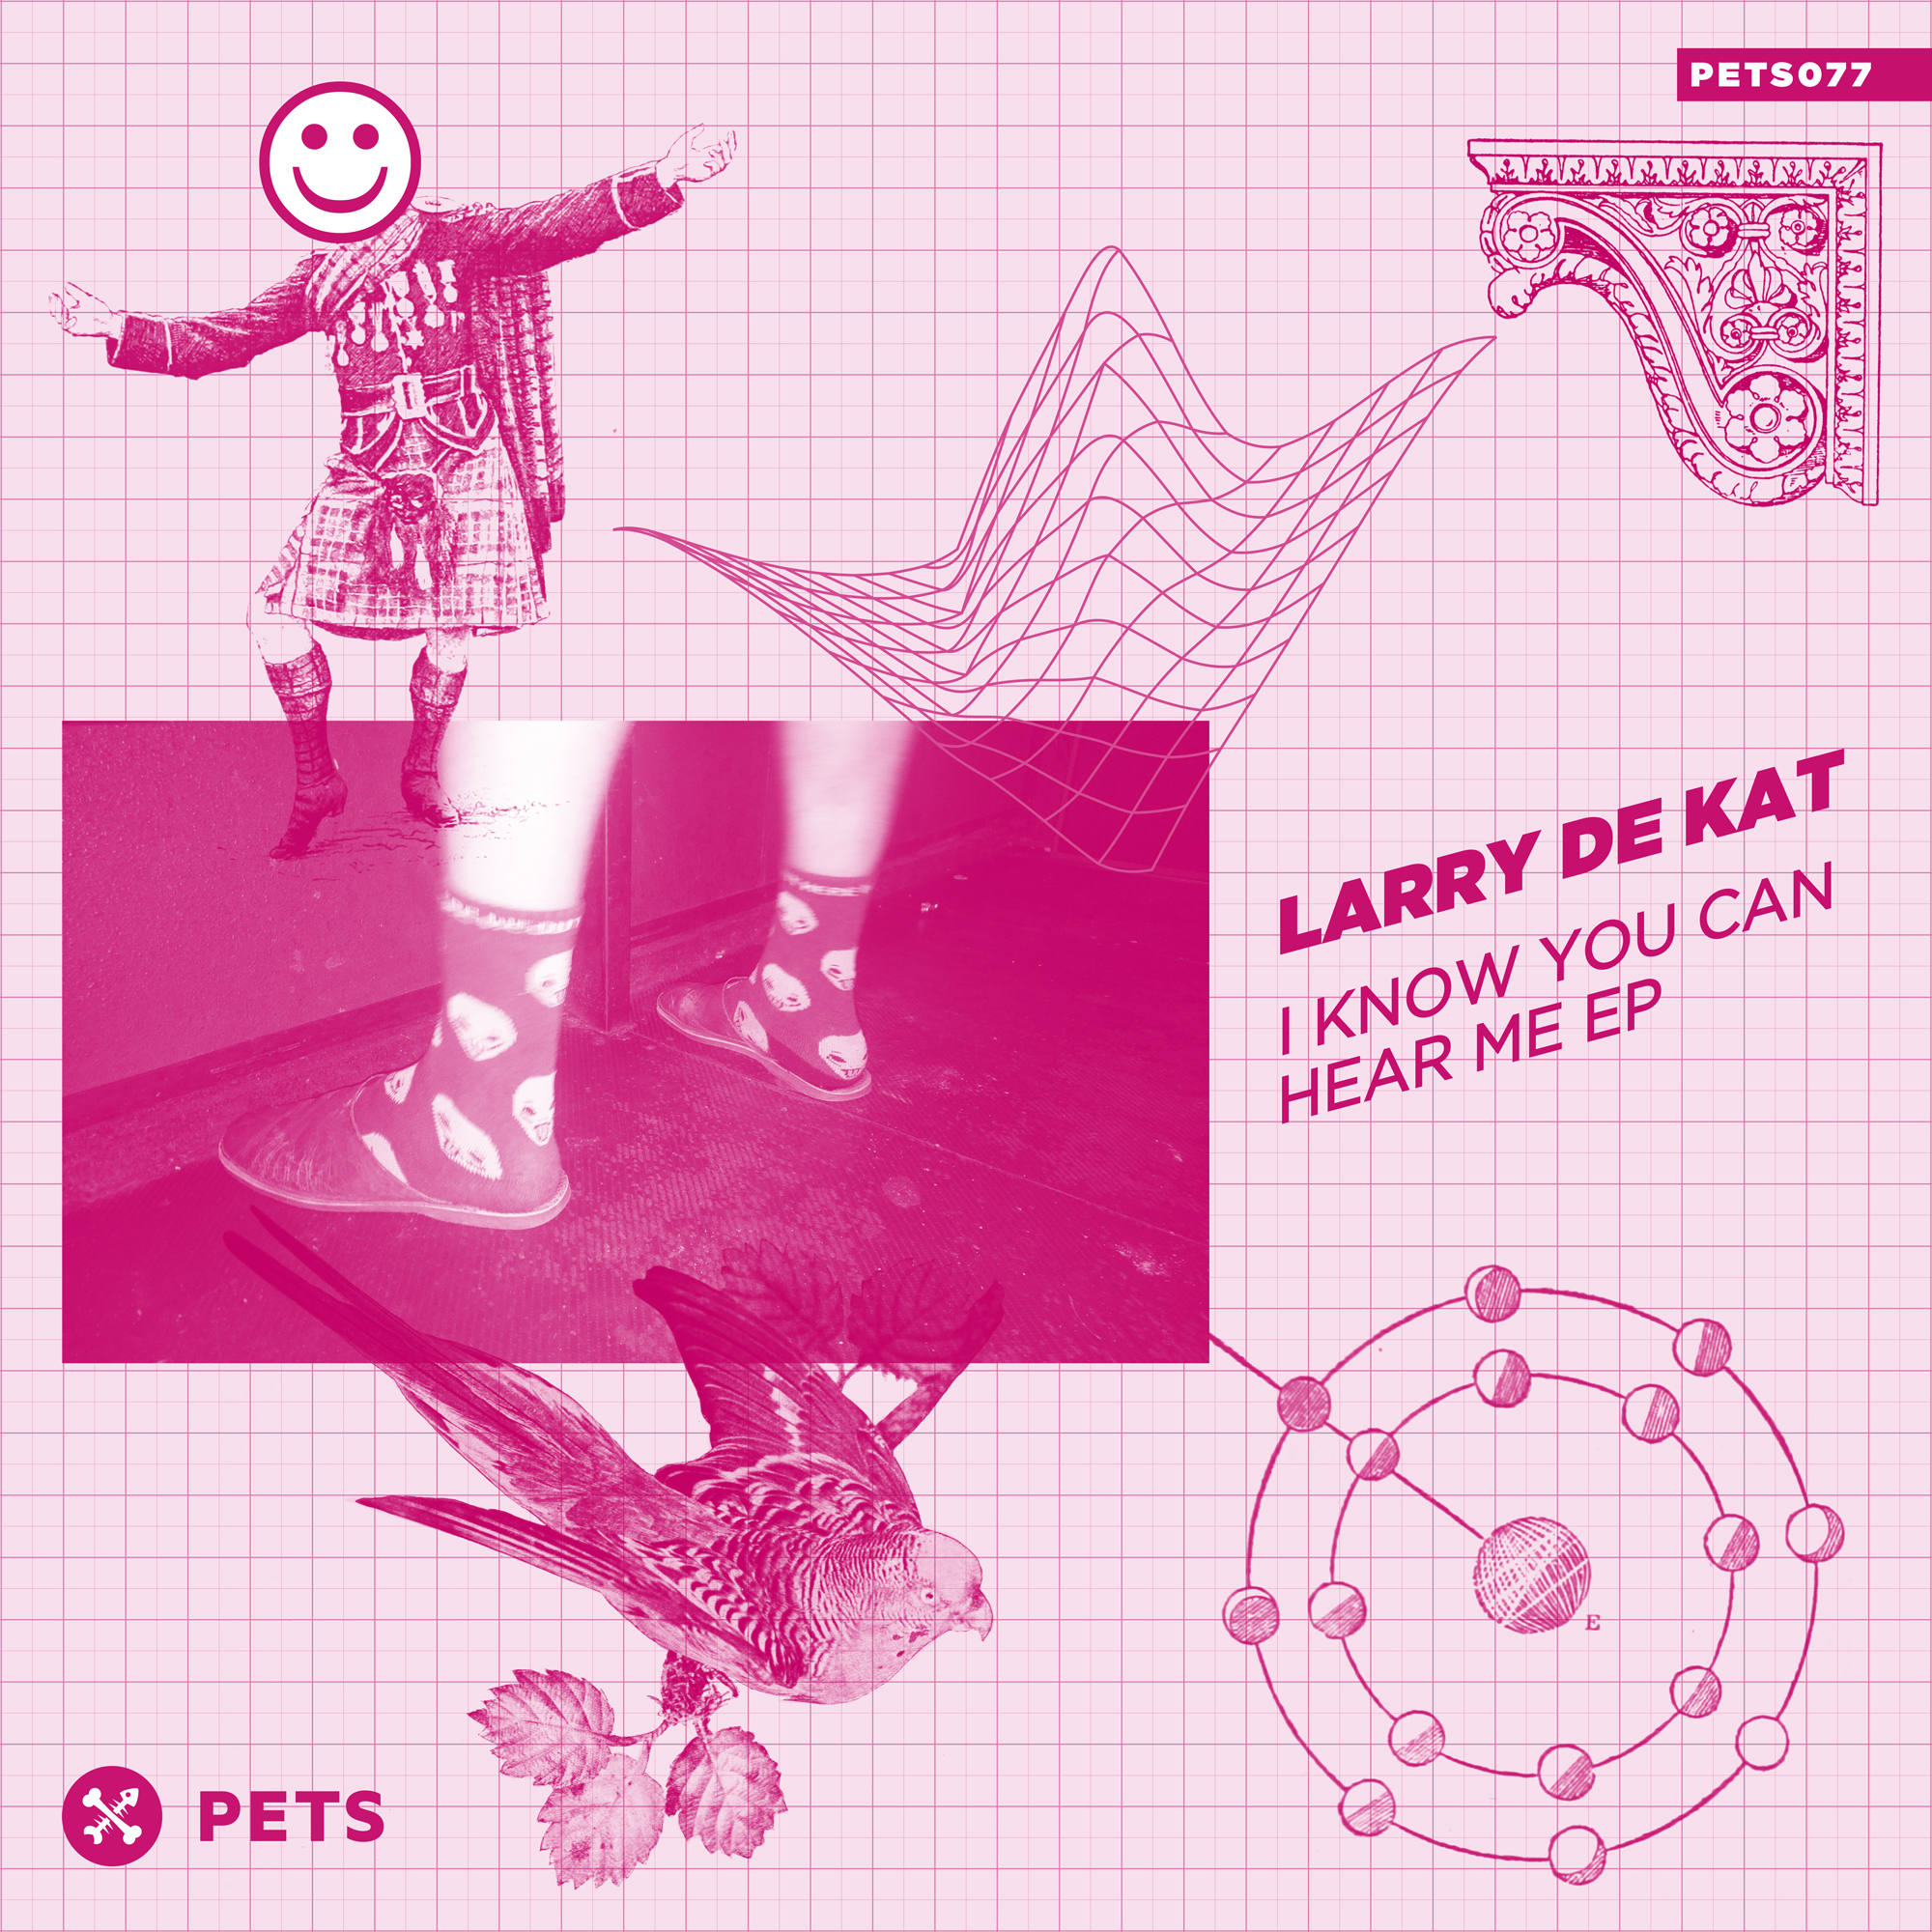 Larry De Kat - I Know You Can Hear Me EP [PETS077]